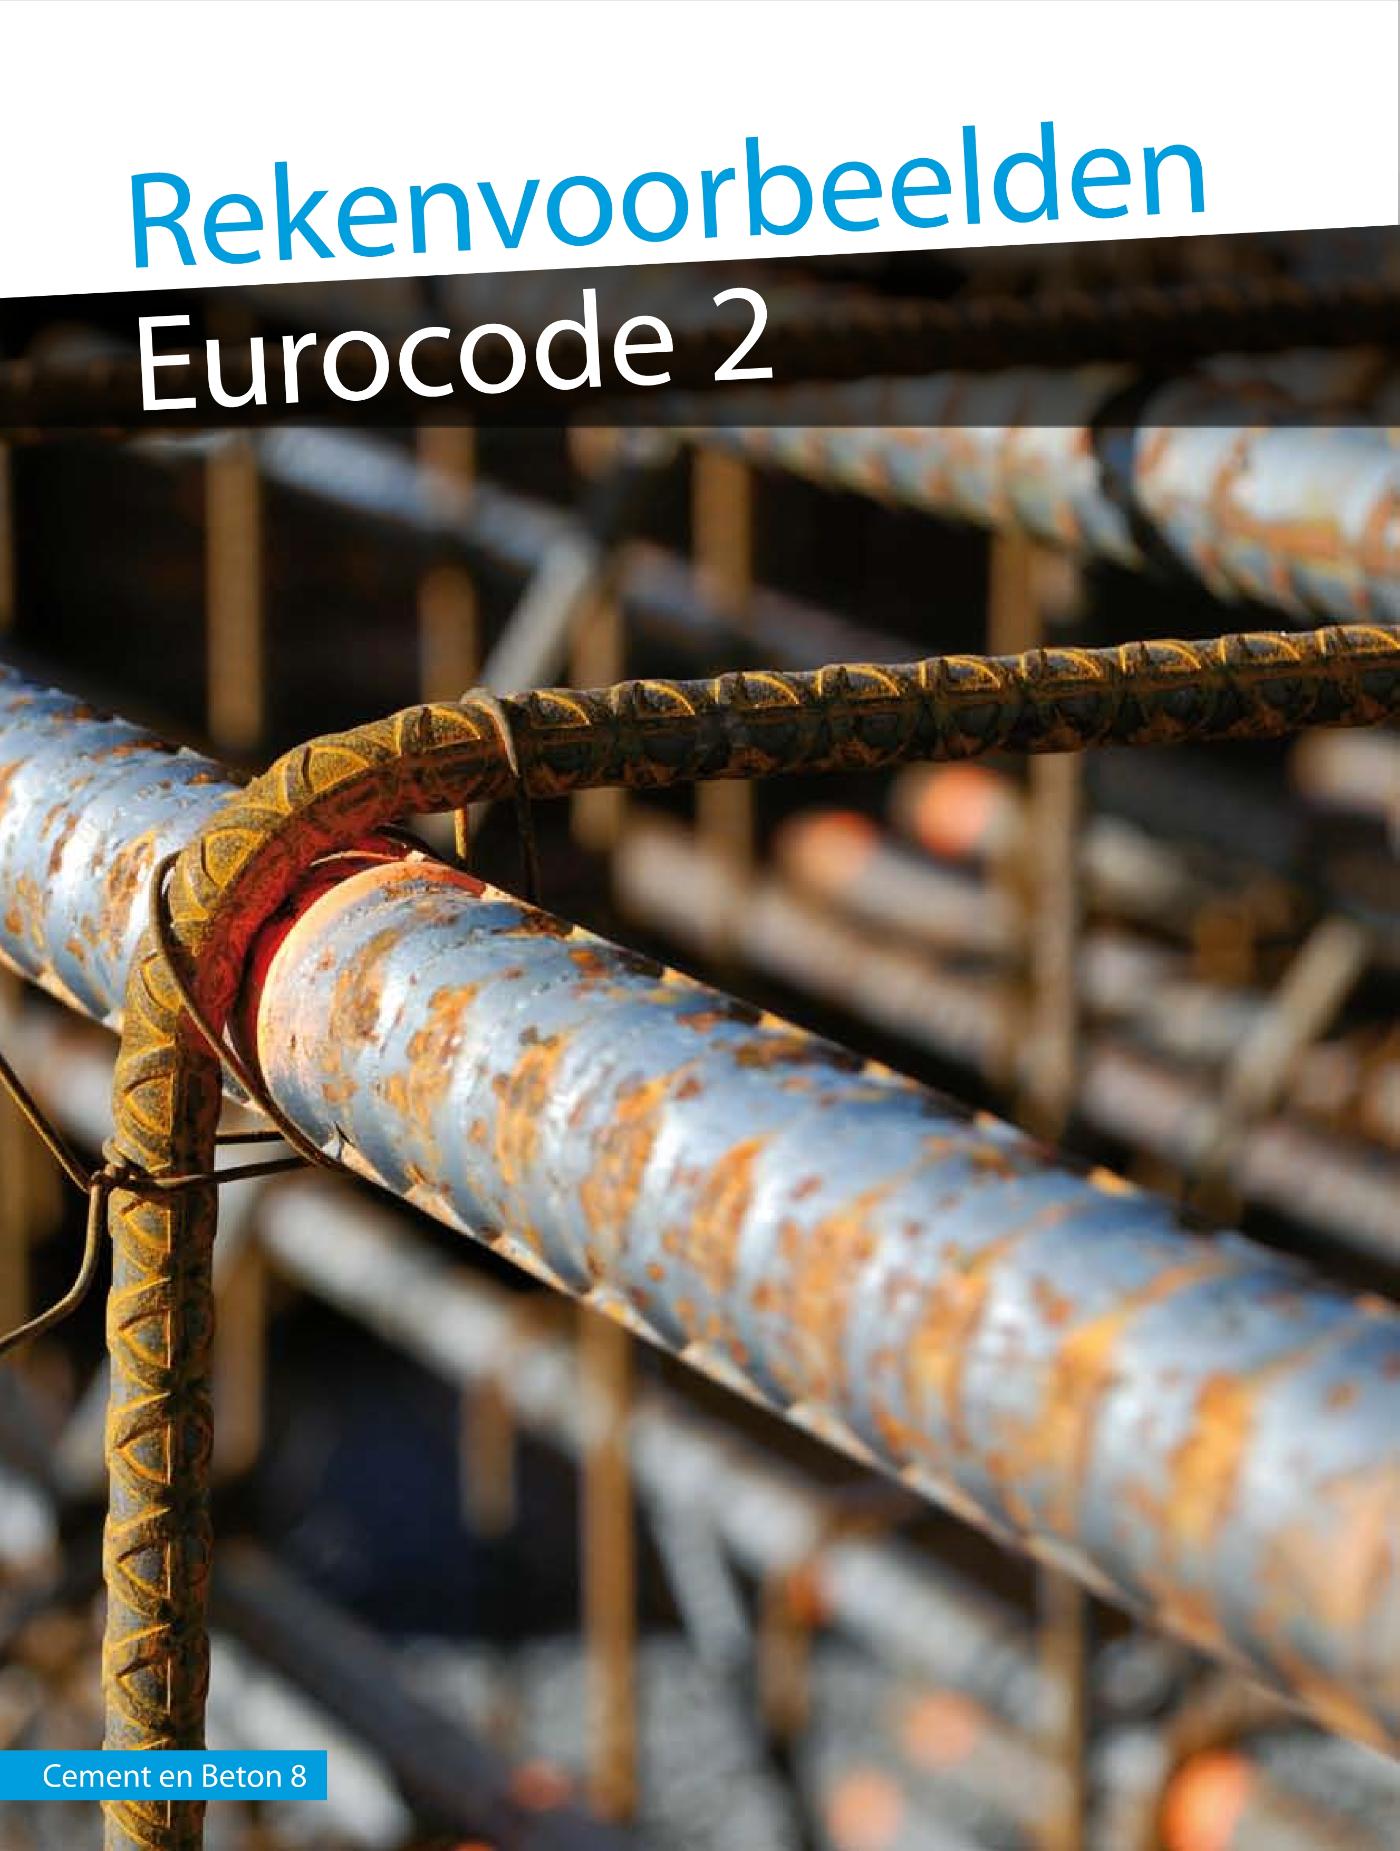 Rekenvoorbeelden Eurocode 2 (Ebook)